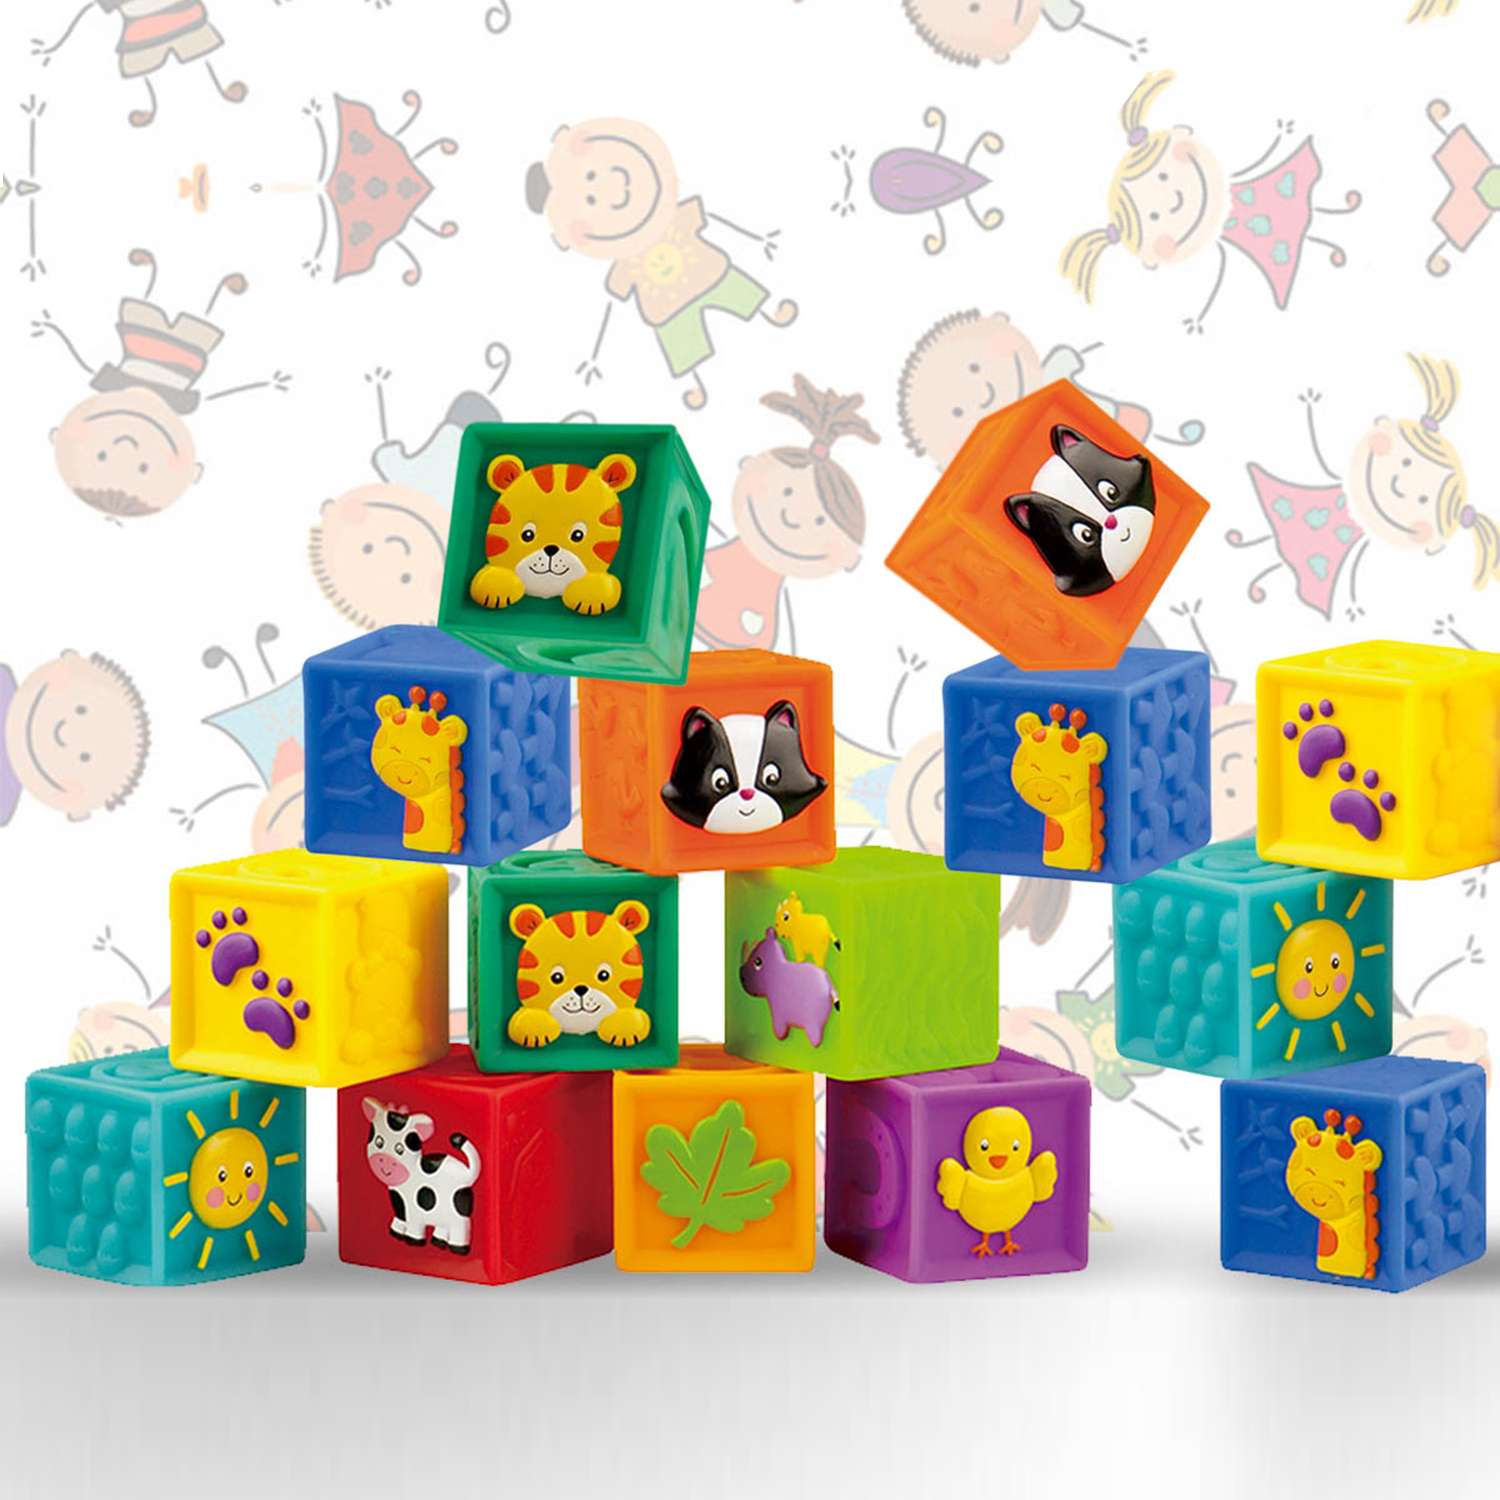 Развивающие мягкие кубики Solmax для детей 9 шт - фото 9